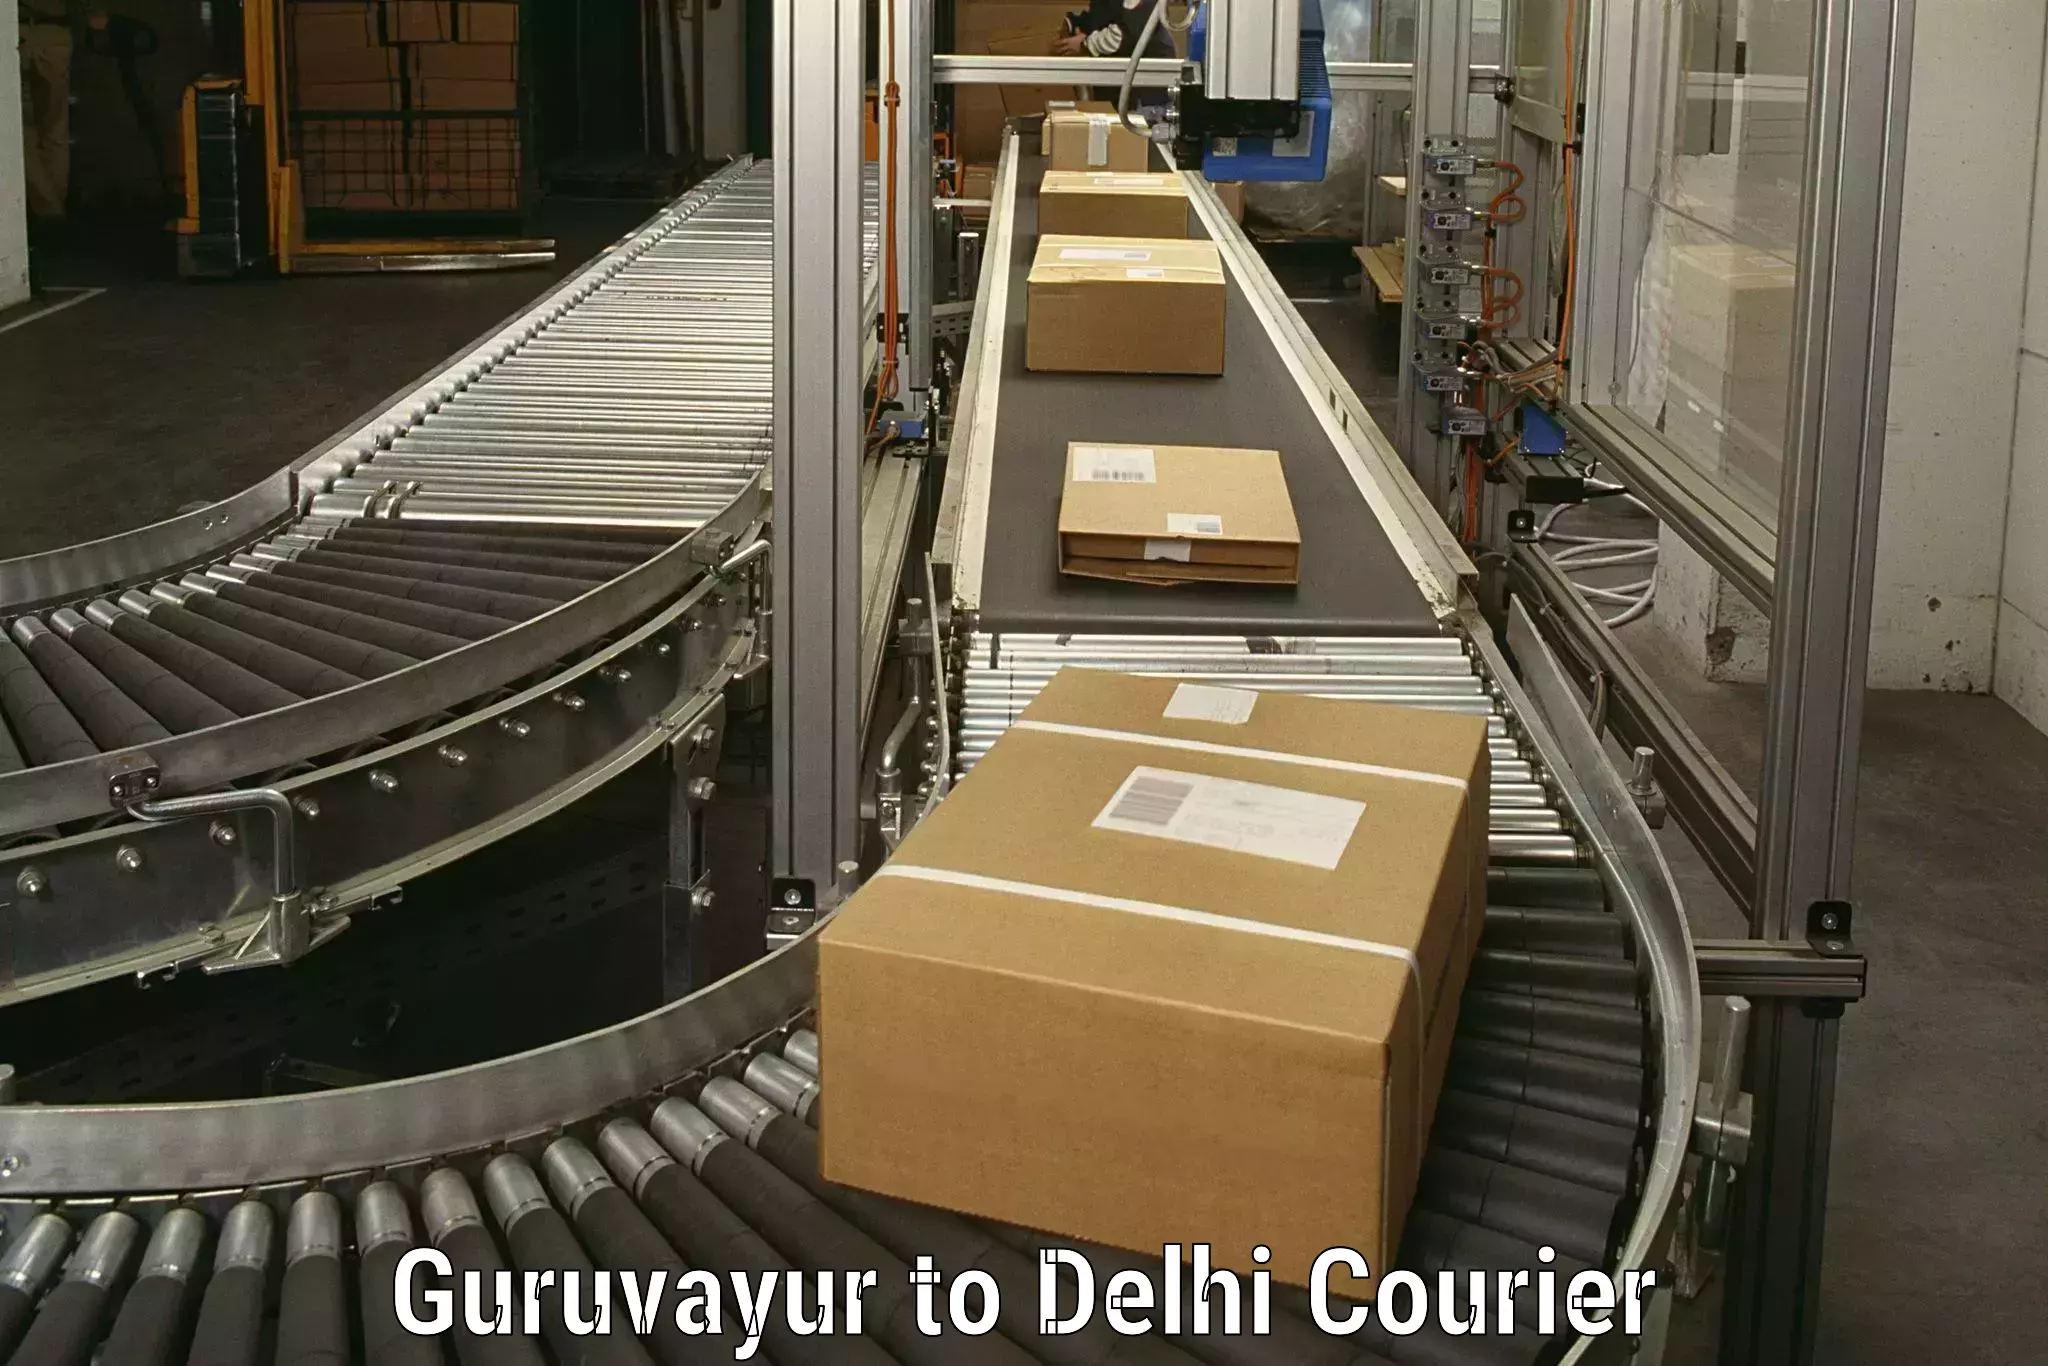 Household goods transport service Guruvayur to Delhi